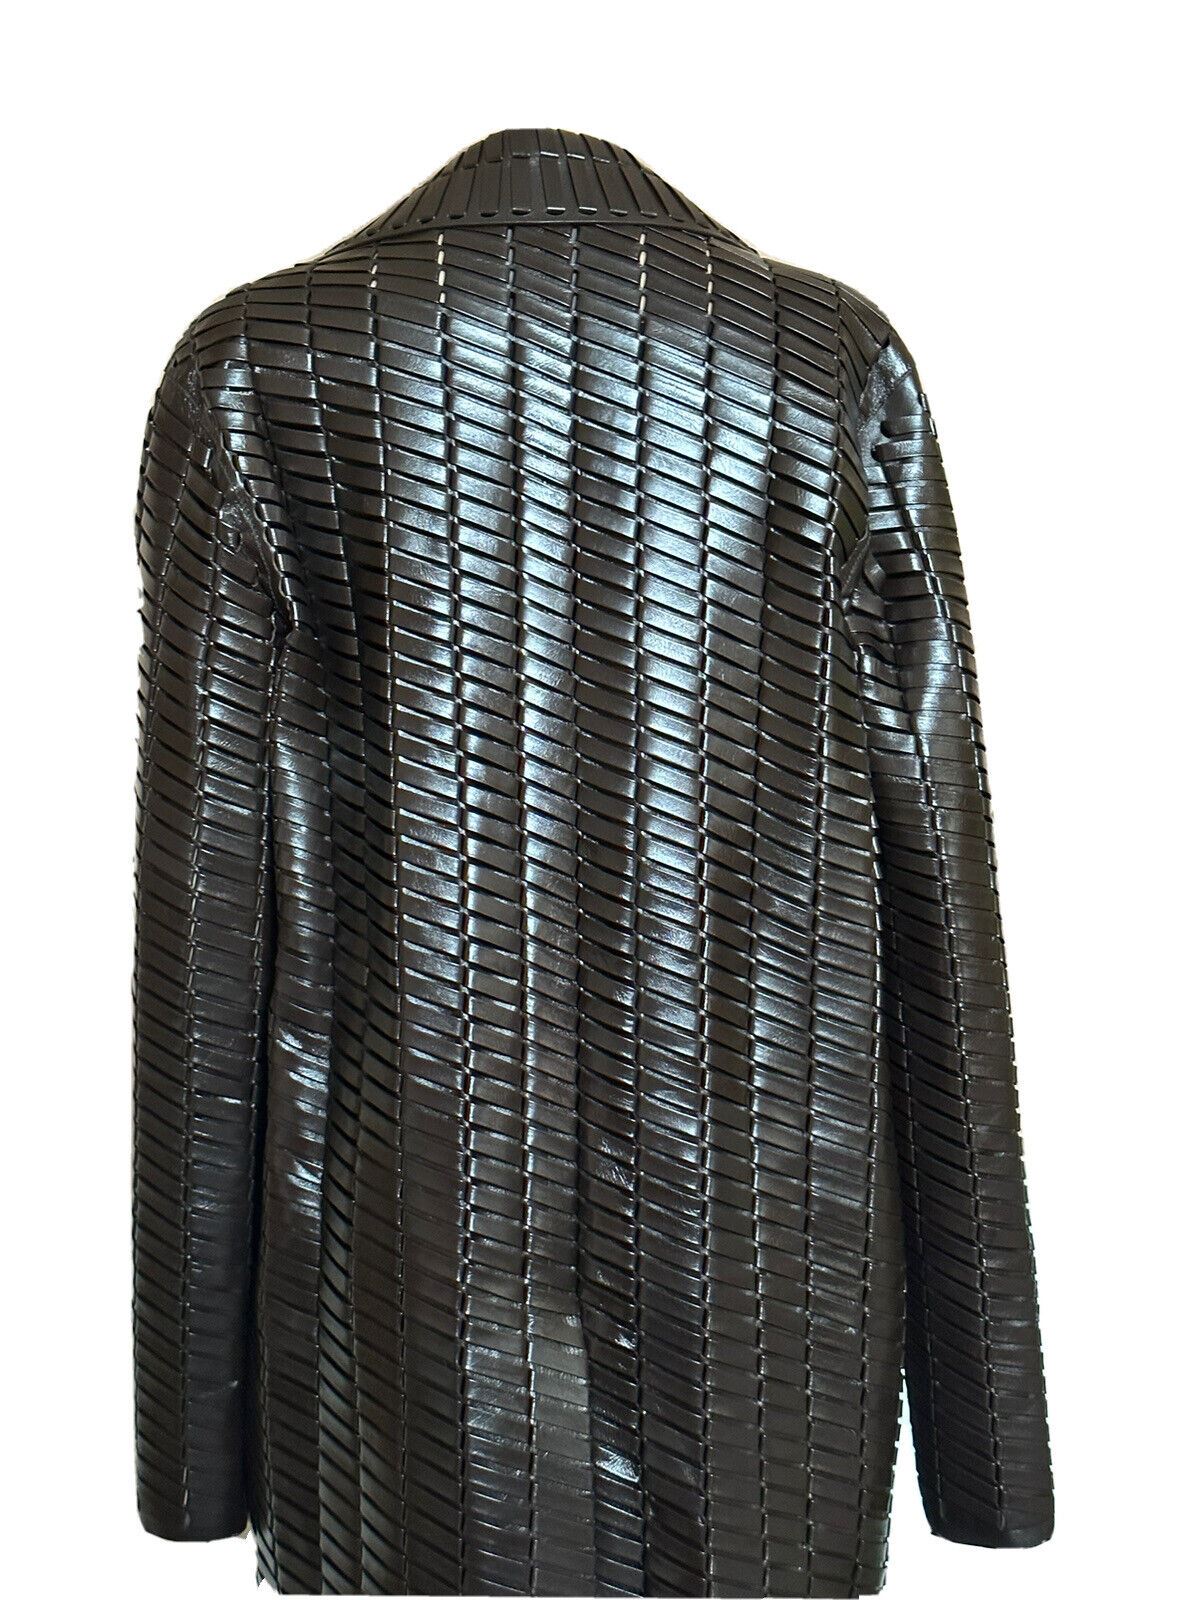 NWT $14900 Bottega Veneta Женское тканое блестящее кожаное пальто шоколадного цвета 36R 618482 